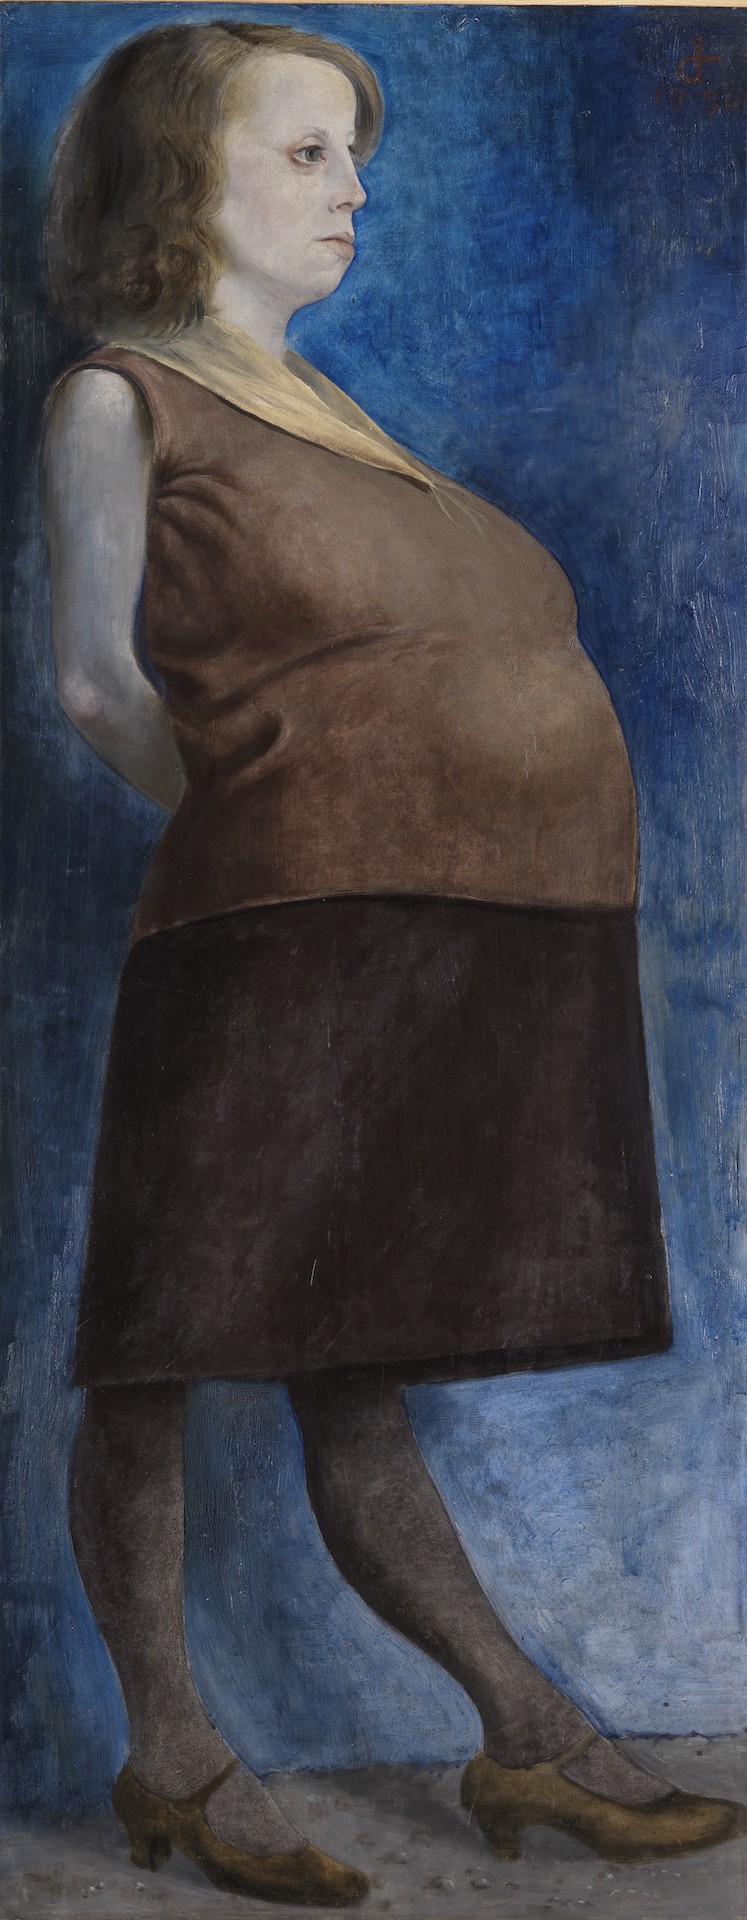 Abbildung der Schwangeren von Otto Dix